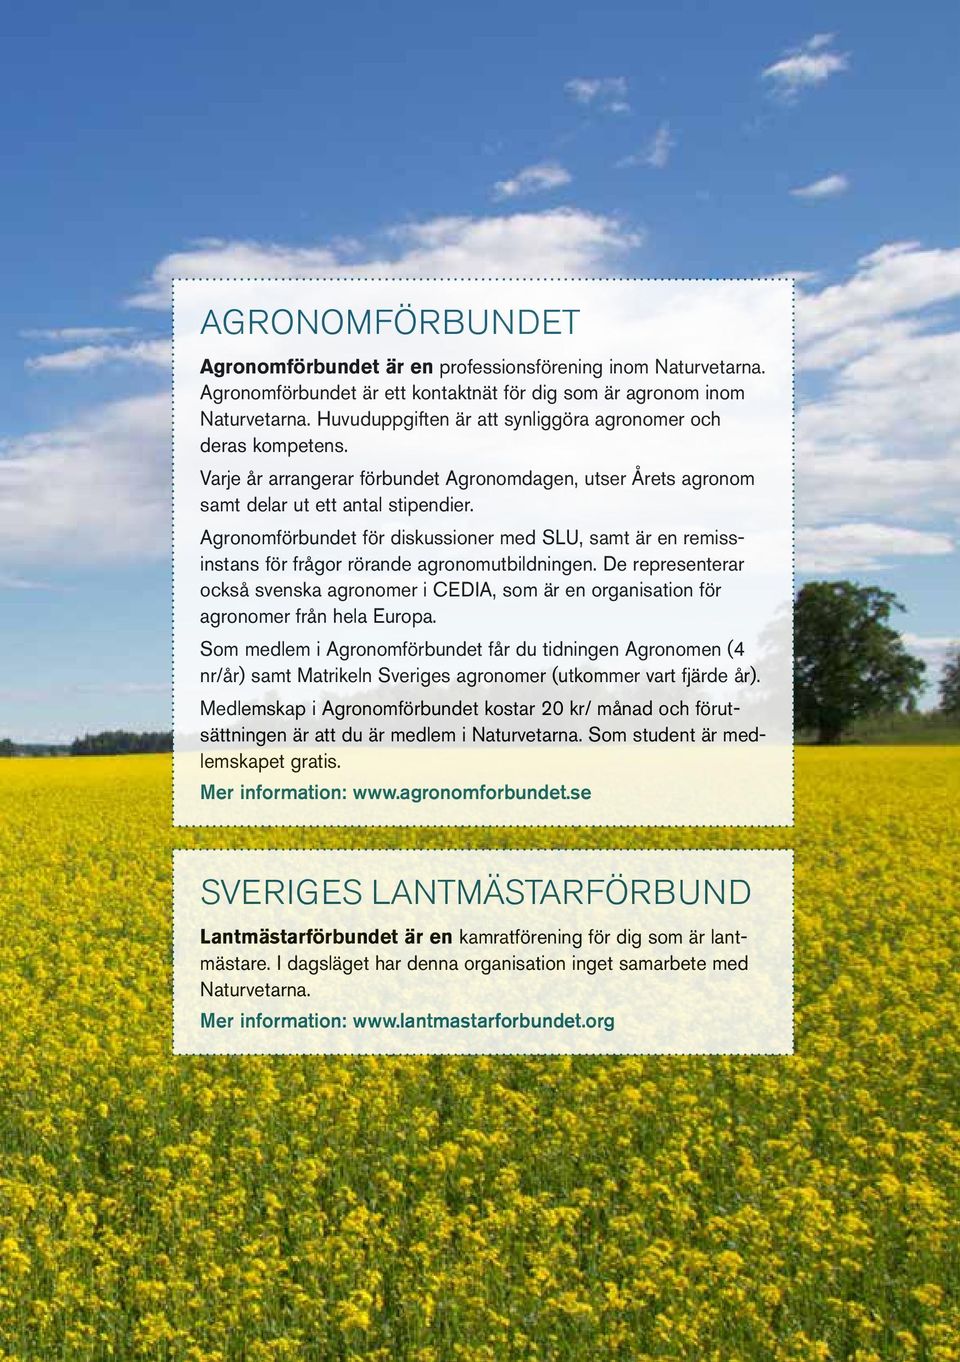 Agronomförbundet för diskussioner med SLU, samt är en remissinstans för frågor rörande agronomutbildningen.